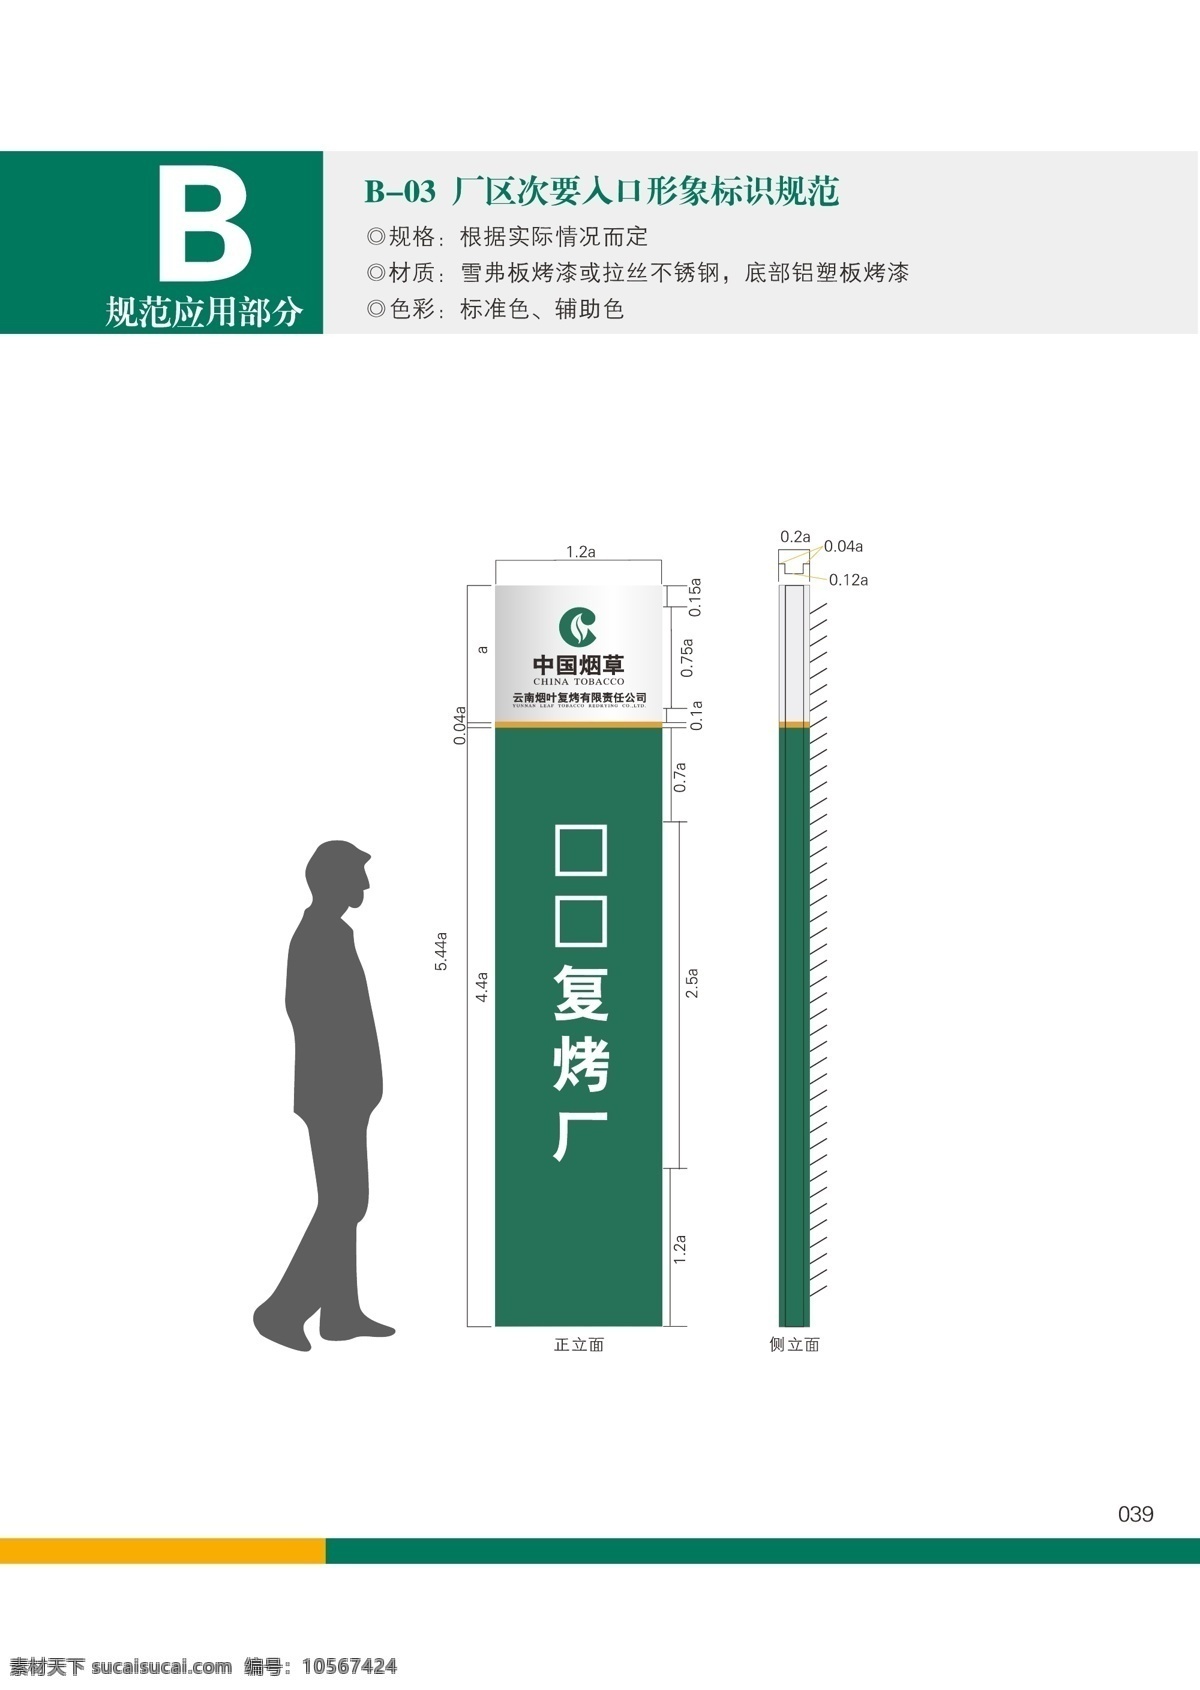 复烤 厂门 门牌 标志 标准 矢量图 中国烟草 复烤厂